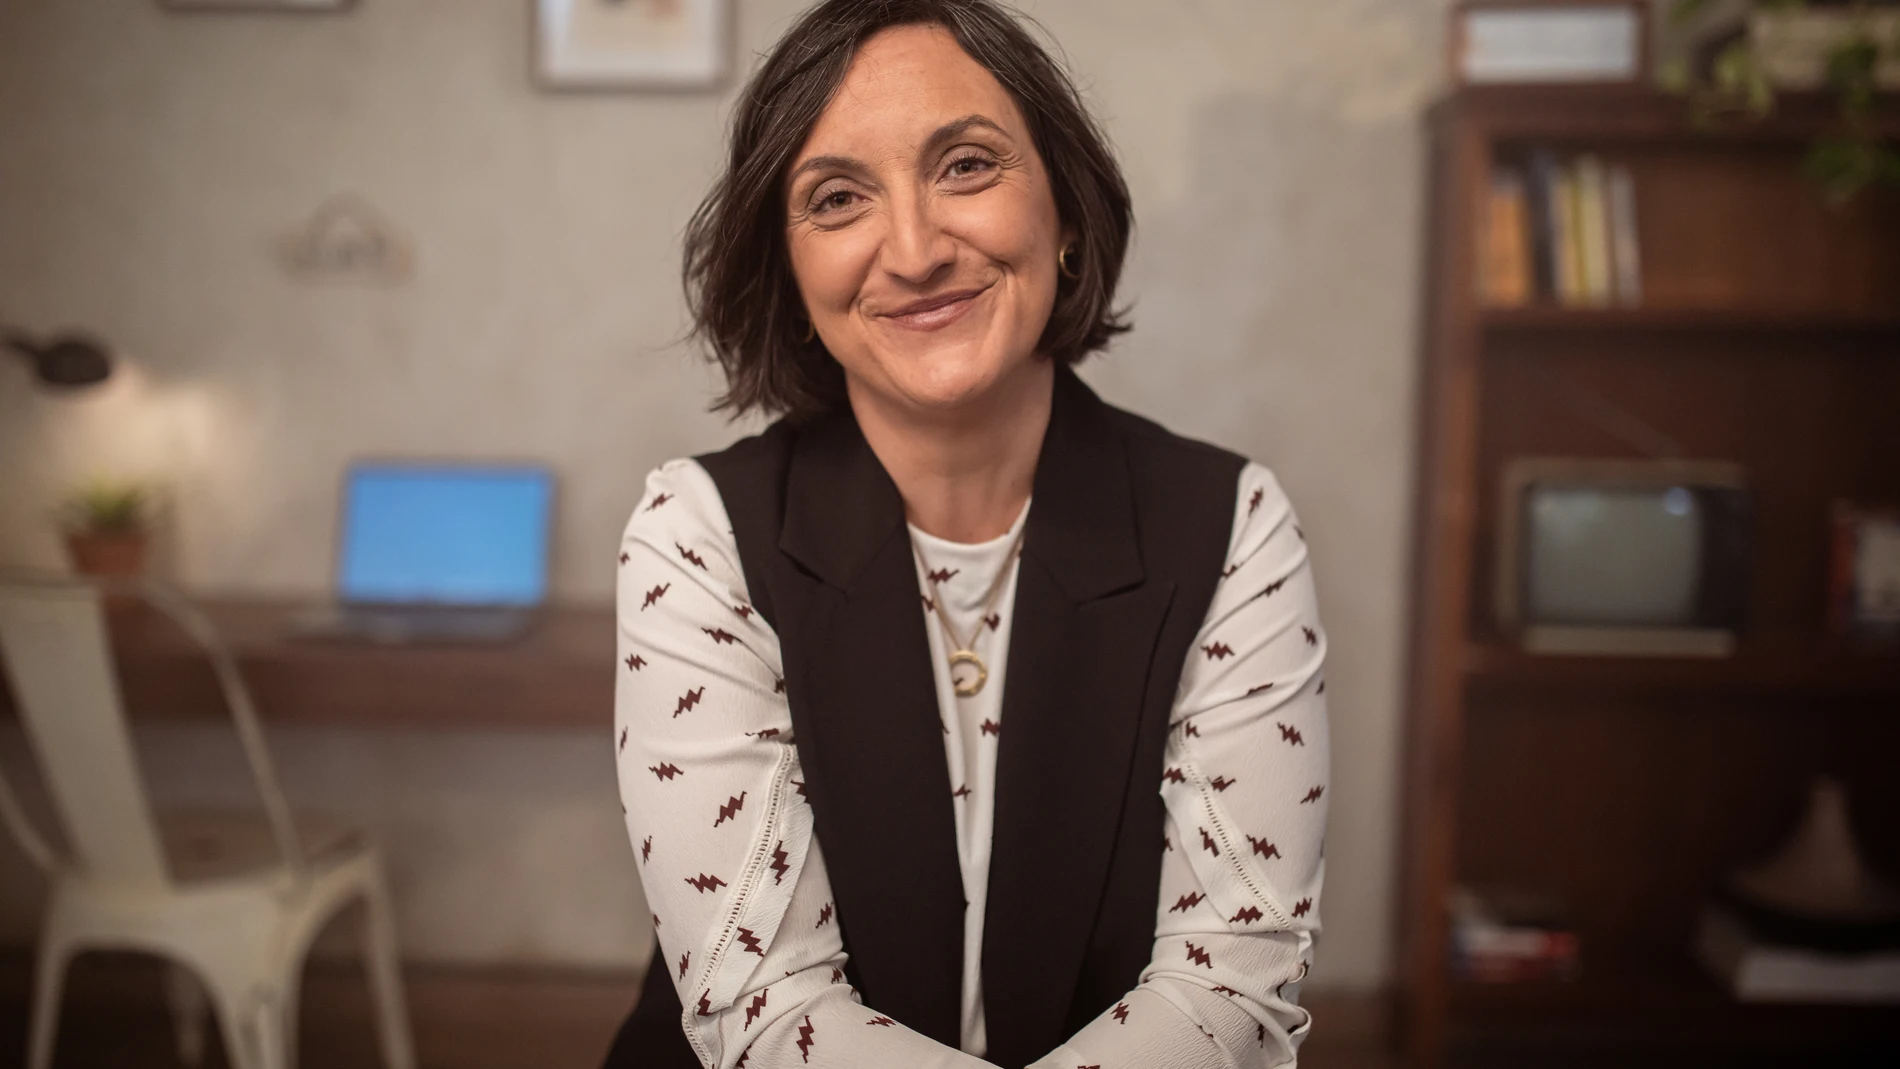 María Zabala es consultora de comunicación y está especializada en Ética y Ciudadanía digitales.